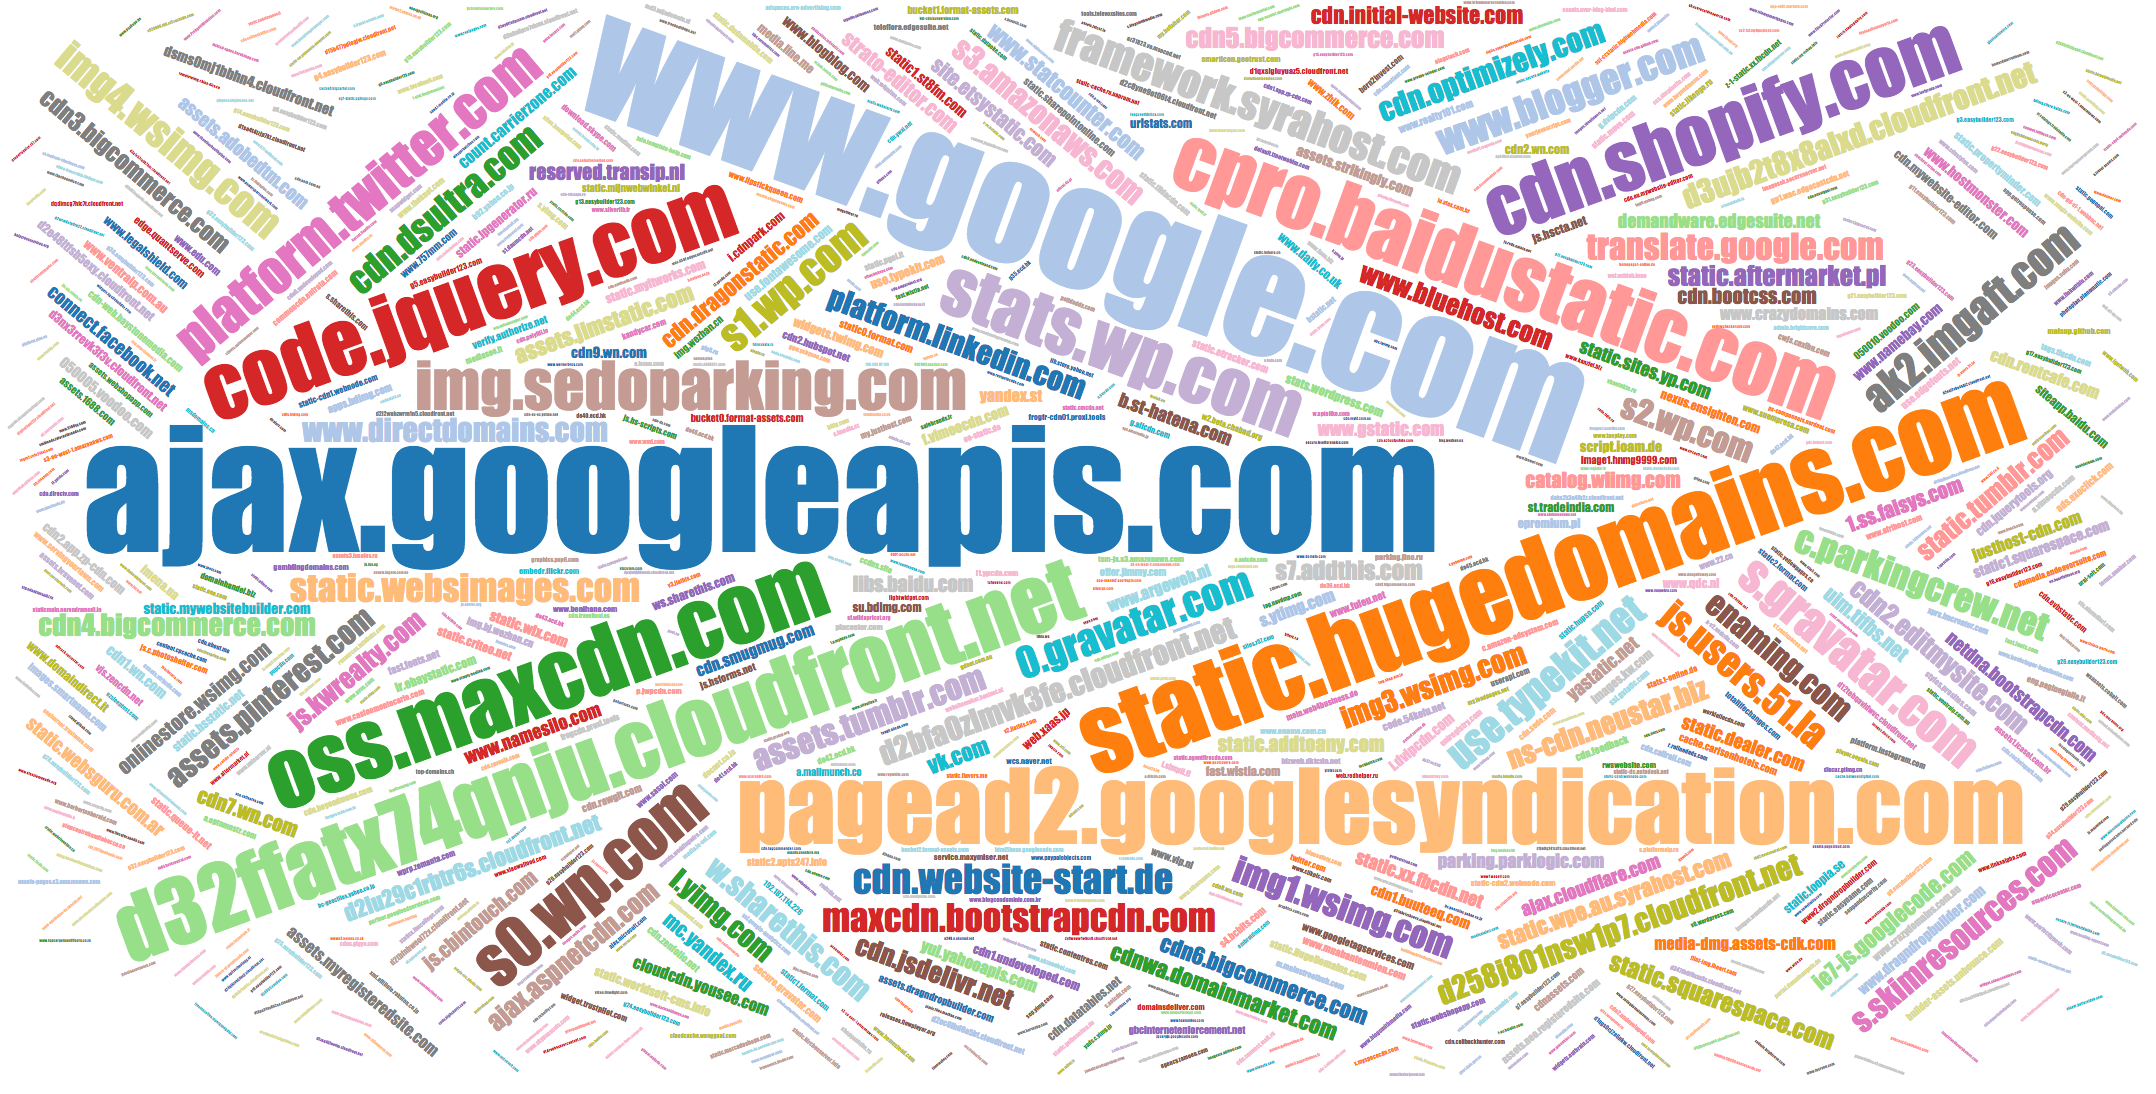 Popular names of JS domains static.parastorage.com, stats.wp.com, etc.